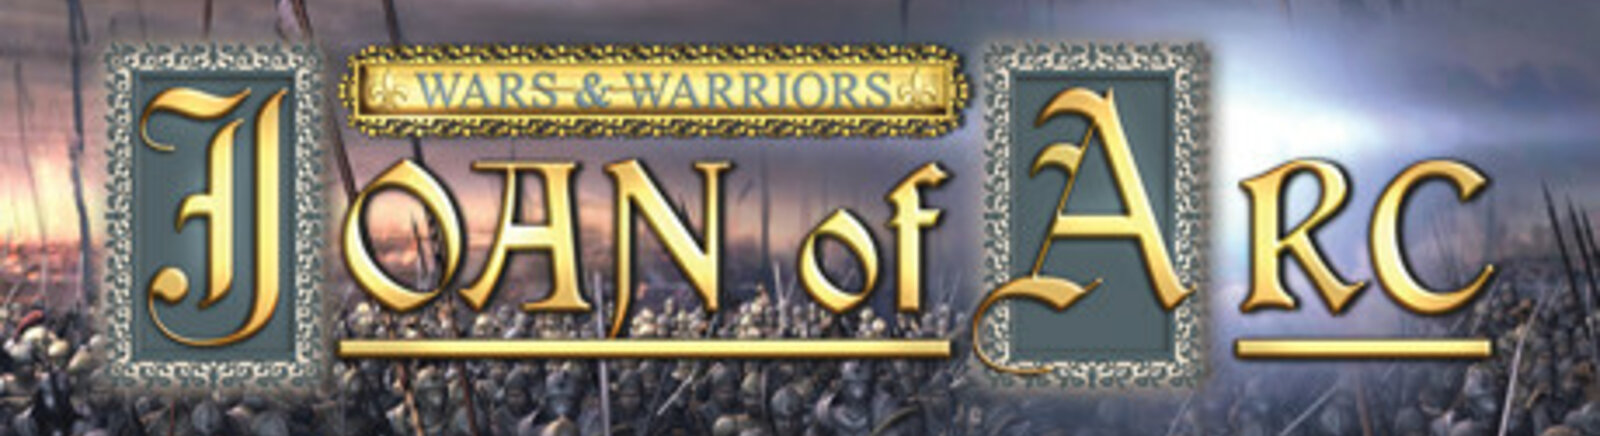 Дата выхода Wars and Warriors: Joan of Arc  на PC в России и во всем мире